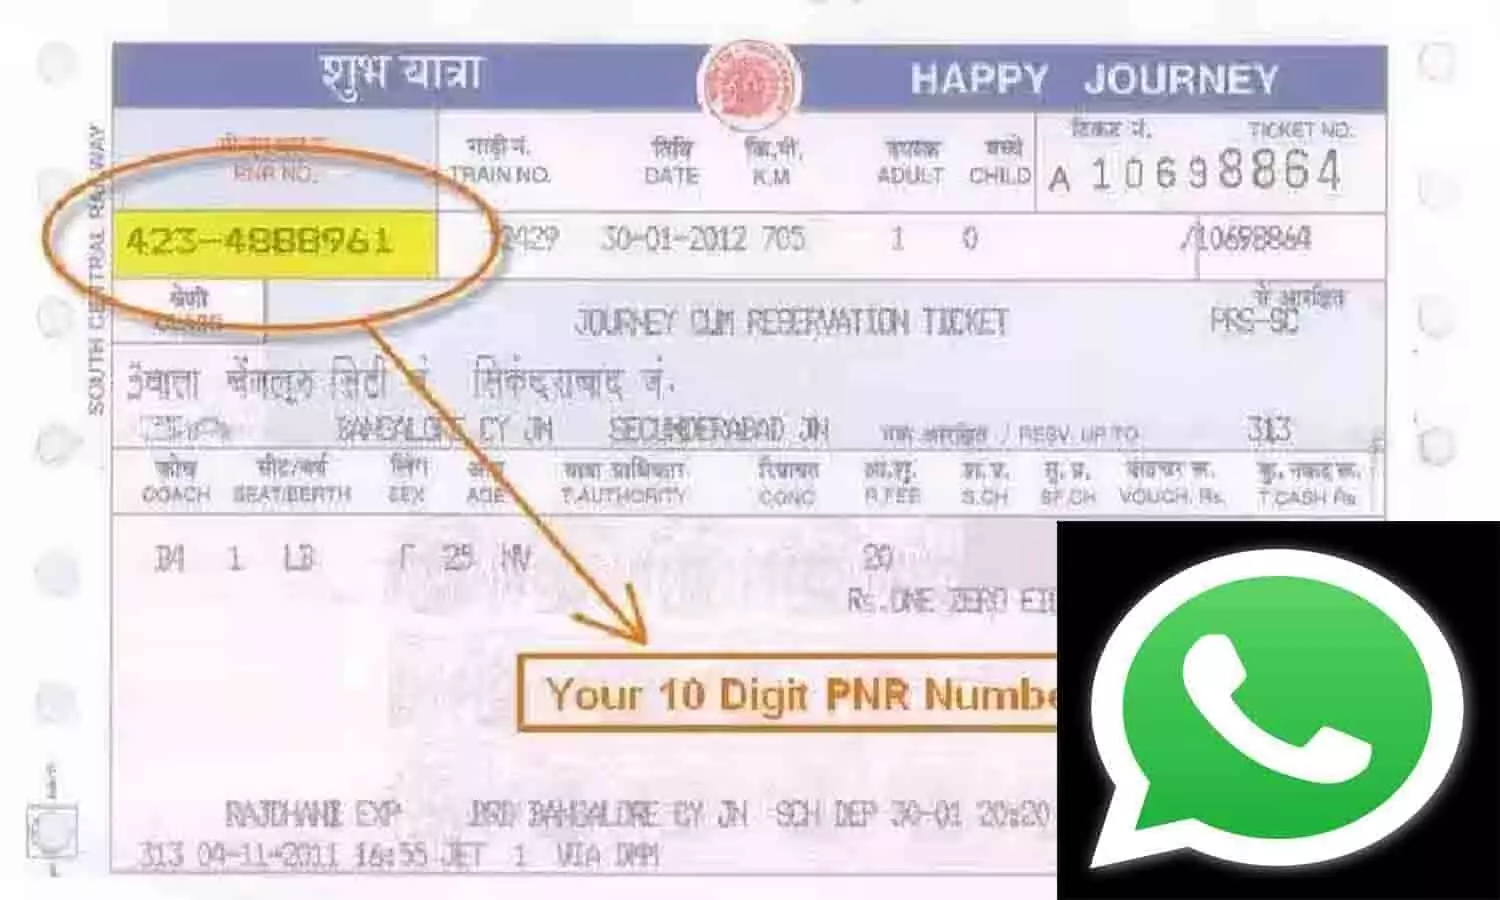 WhatsApp Se PNR Status Kaise Check Kare: व्हाट्सअप पर ऐसे चेक करें PNR Status, जाने